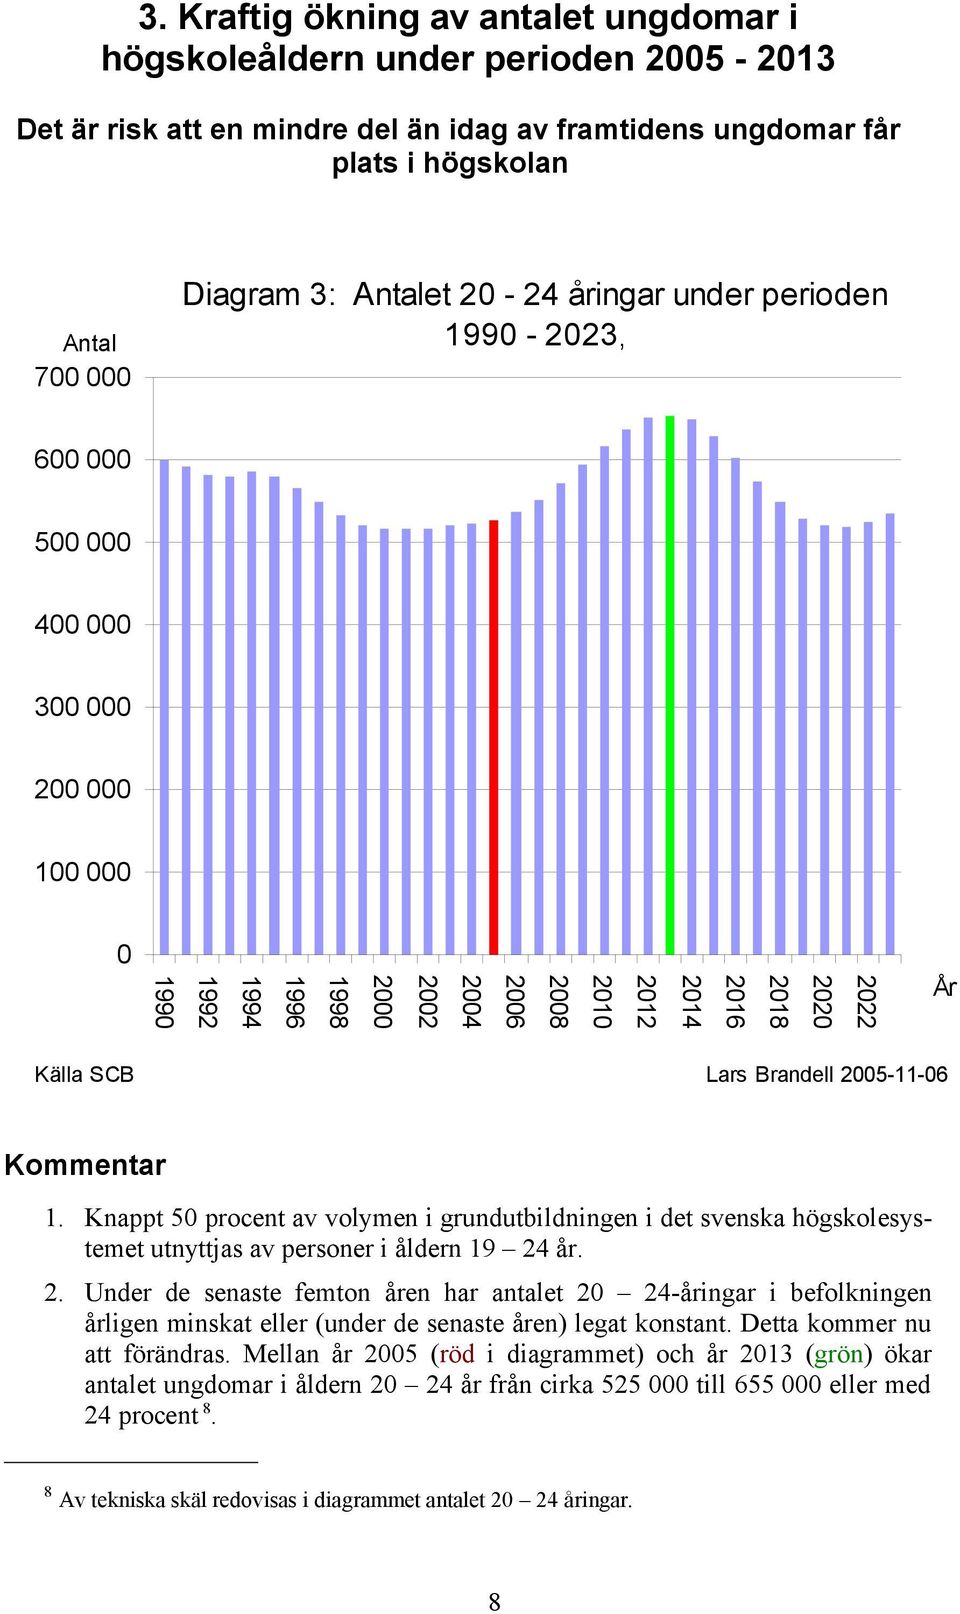 Brandell 2005-11-06 Kommentar 1. Knappt 50 procent av volymen i grundutbildningen i det svenska högskolesystemet utnyttjas av personer i åldern 19 24 år. 2. Under de senaste femton åren har antalet 20 24-åringar i befolkningen årligen minskat eller (under de senaste åren) legat konstant.